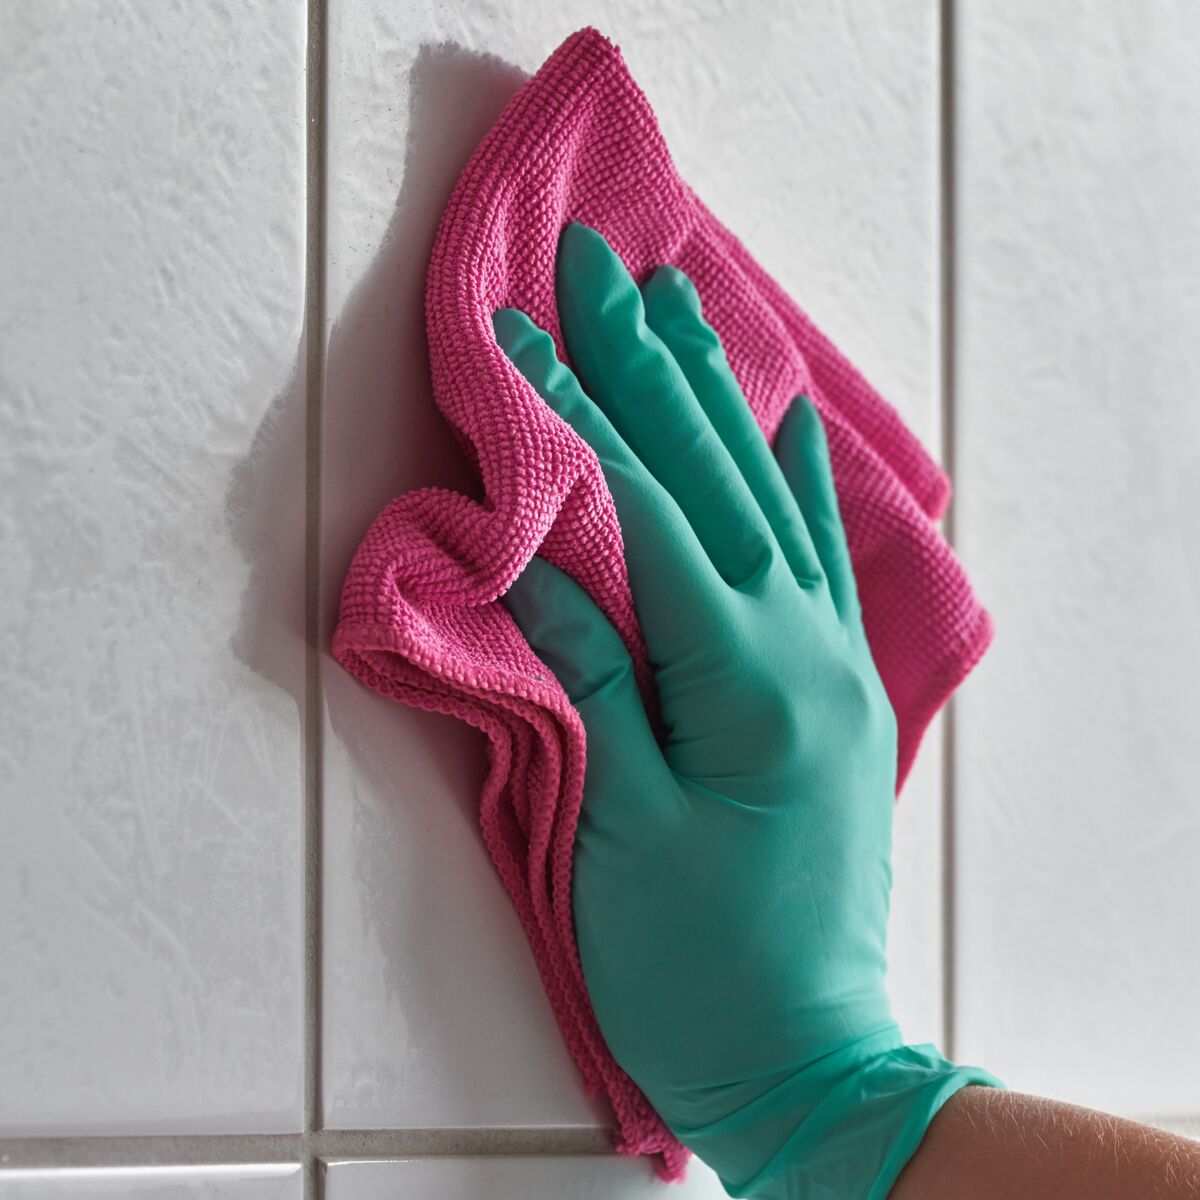 Comment nettoyer les joints en silicone de la salle de bain ?